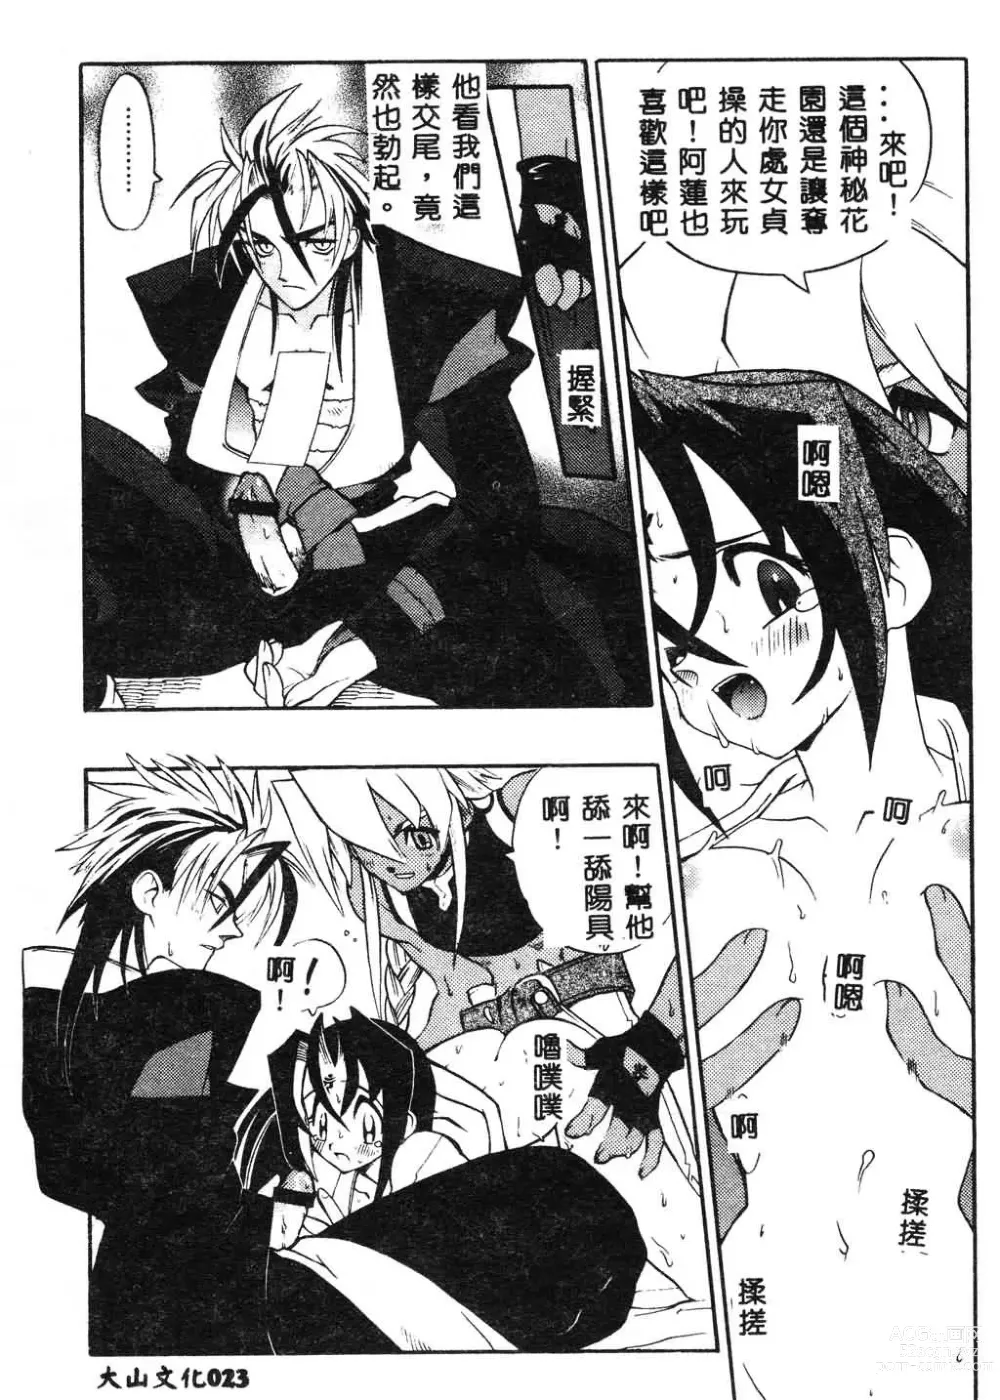 Page 24 of manga Fuusatsu Hyakke